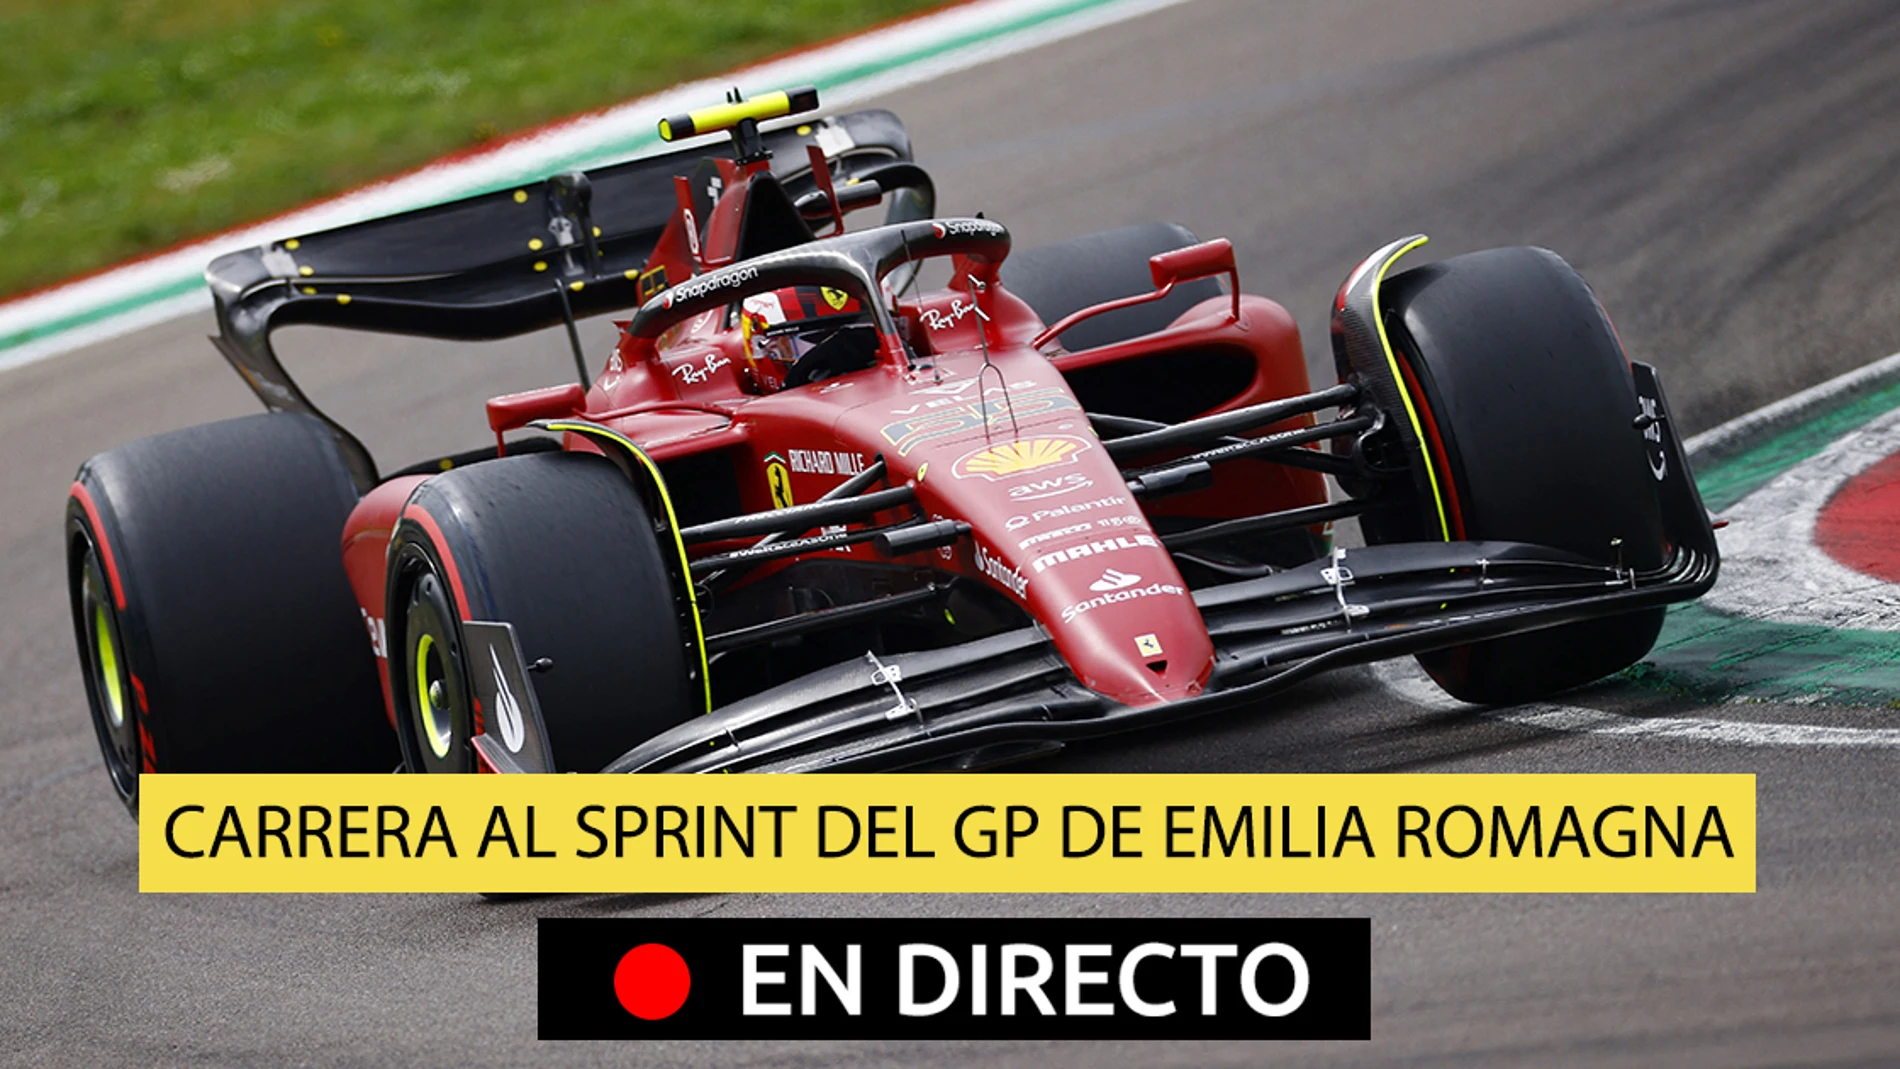 F1 en directo hoy I Carrera al sprint del GP de Emilia Romagna de Fórmula 1